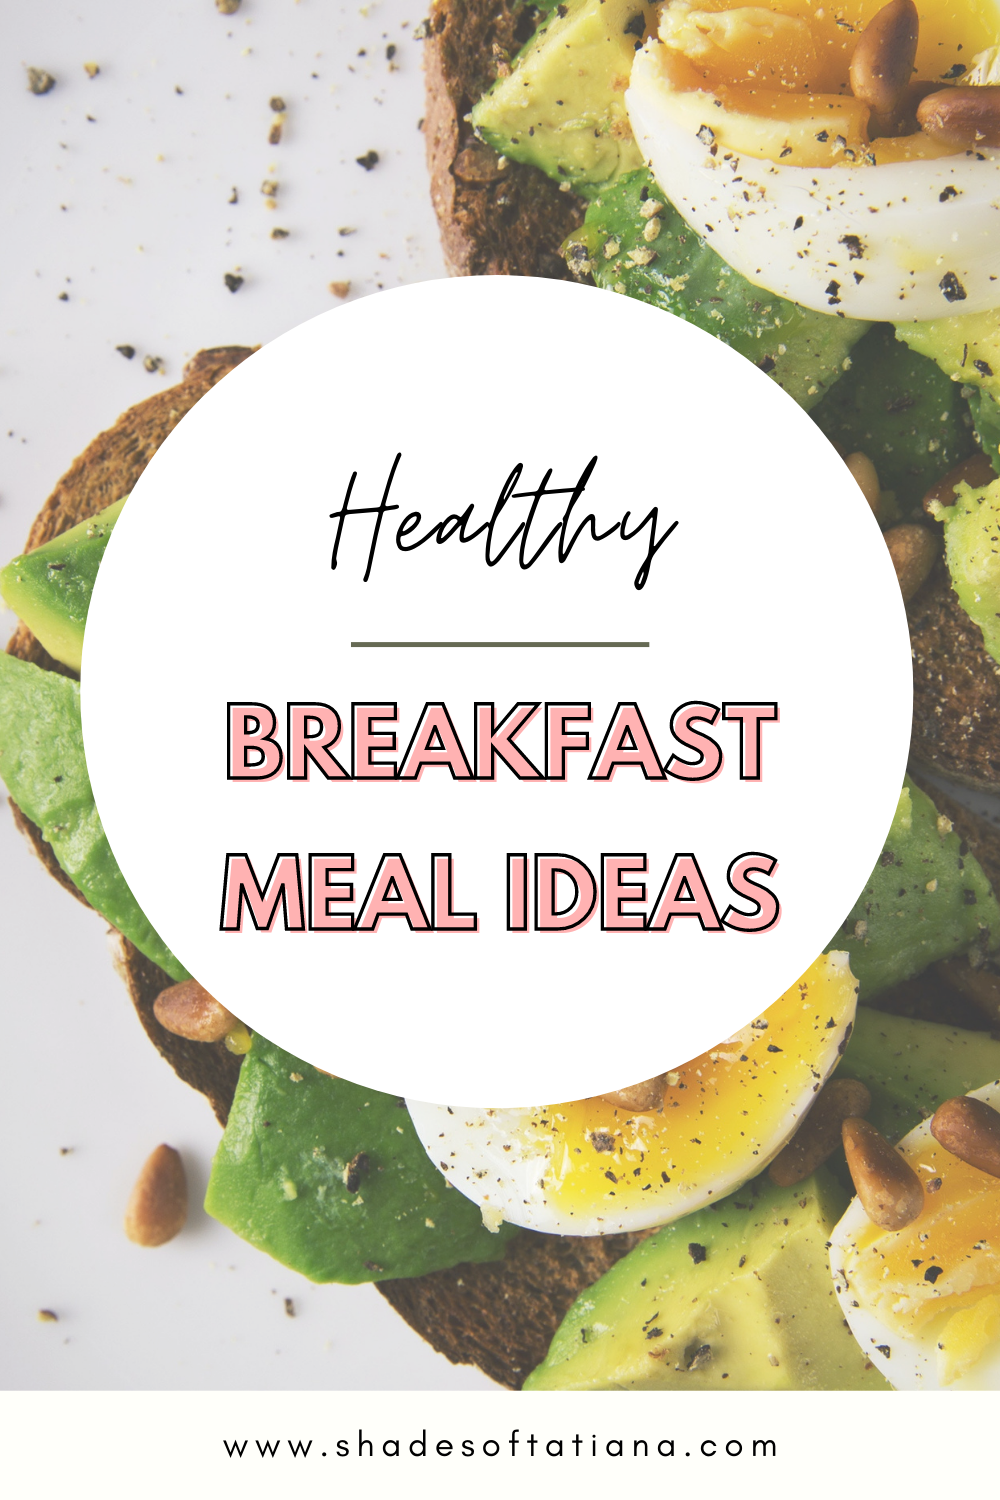 15 Healthy Breakfast Meal Ideas To Try Right Now — shades of tatiana media